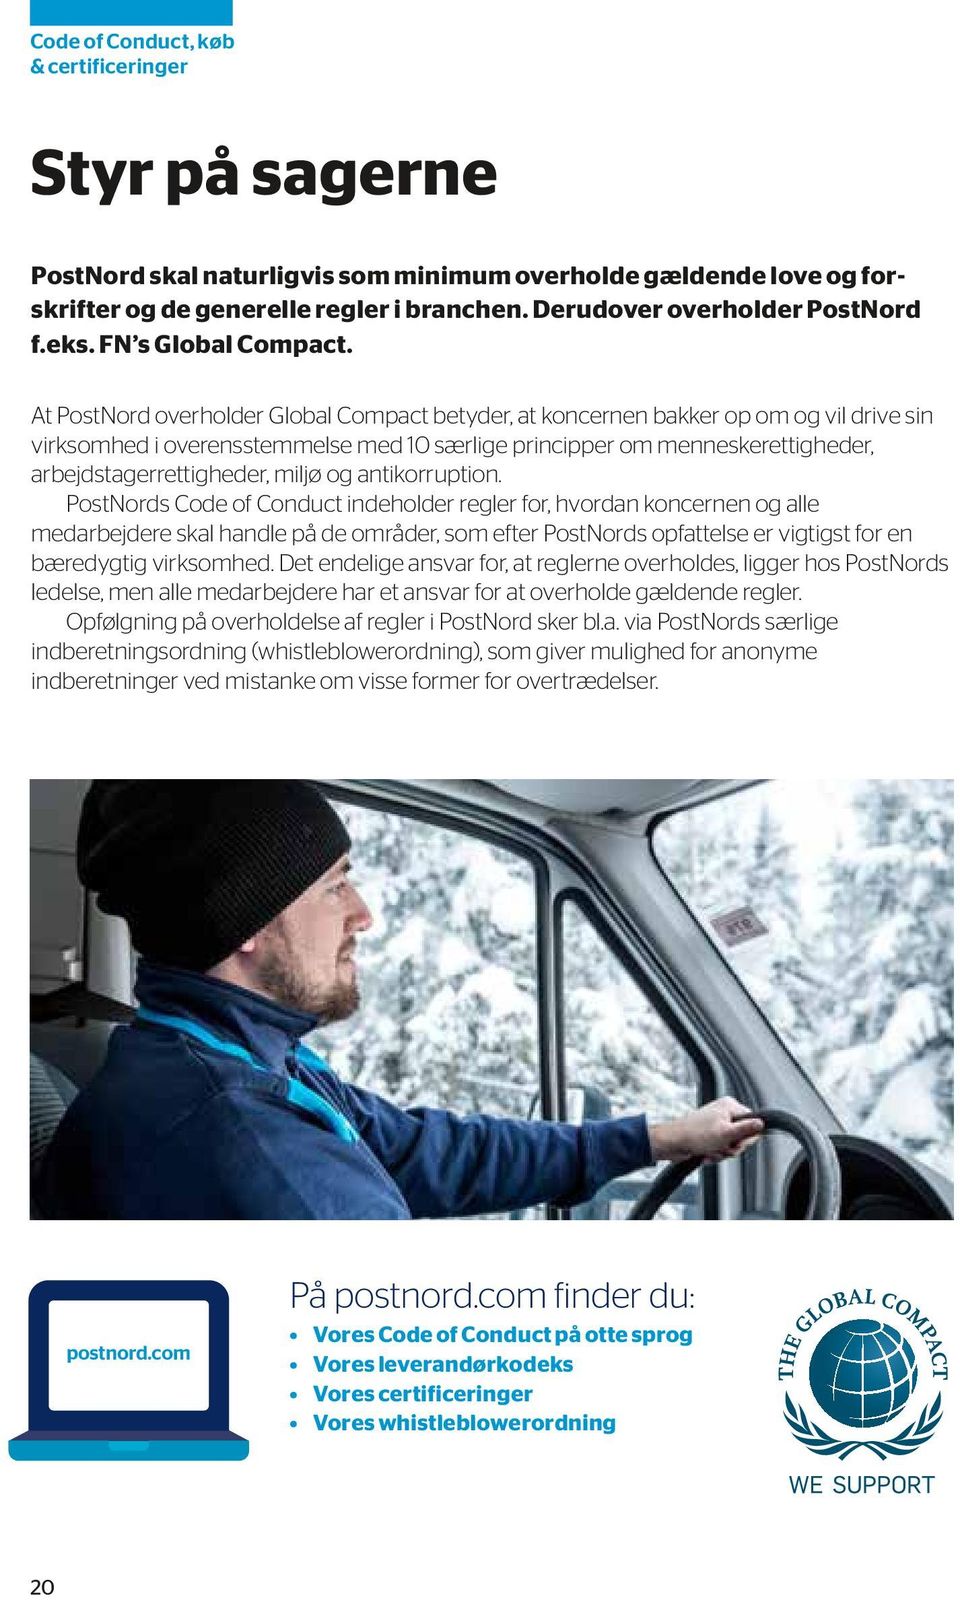 At PostNord overholder Global Compact betyder, at koncernen bakker op om og vil drive sin virksomhed i overensstemmelse med 10 særlige principper om menneskerettigheder, arbejdstagerrettigheder,